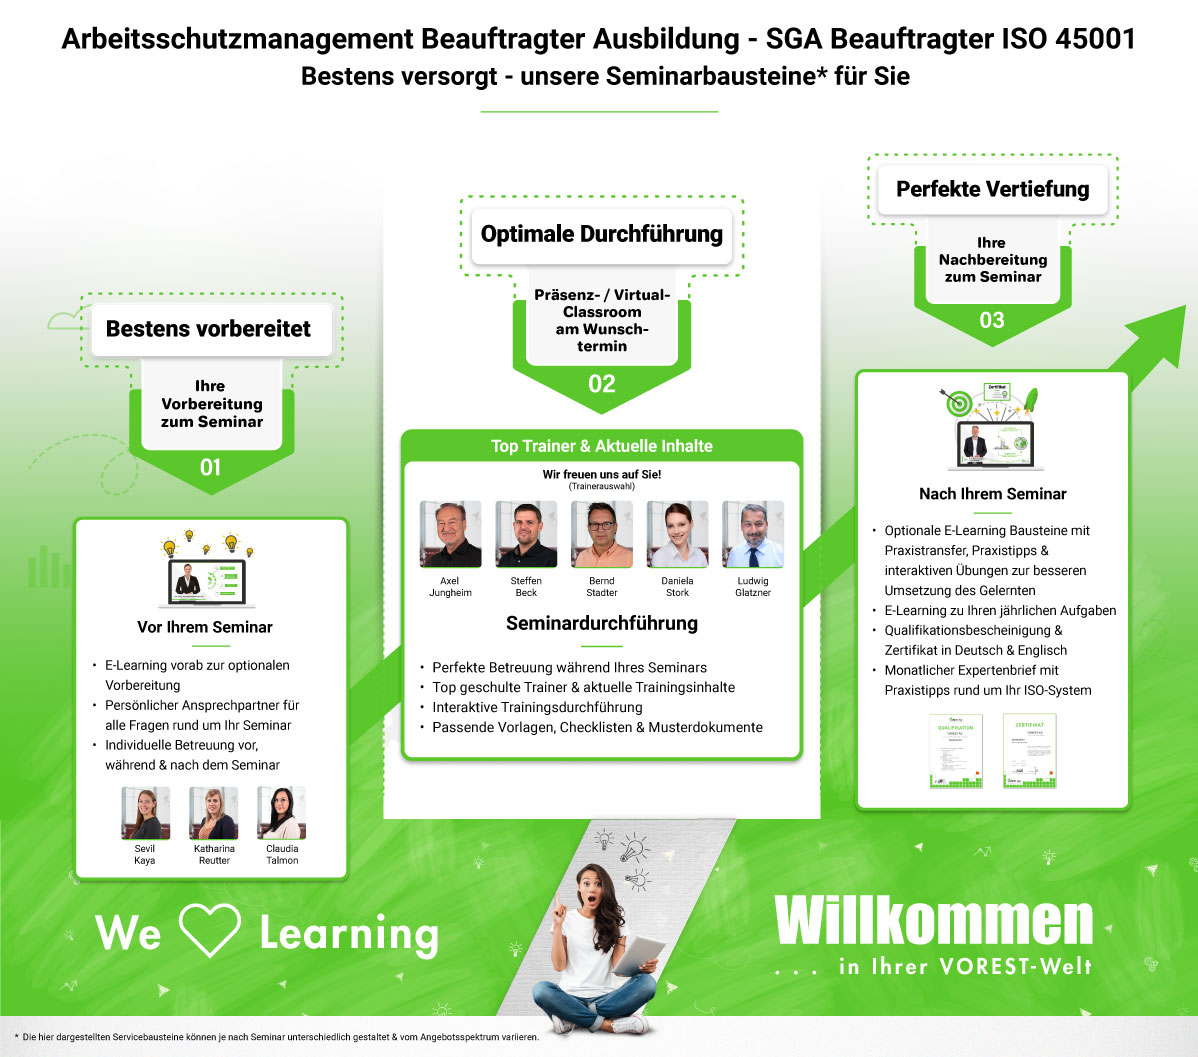 Arbeitsschutzmanagement Beauftragter Ausbildung - SGA Beauftragter ISO 45001